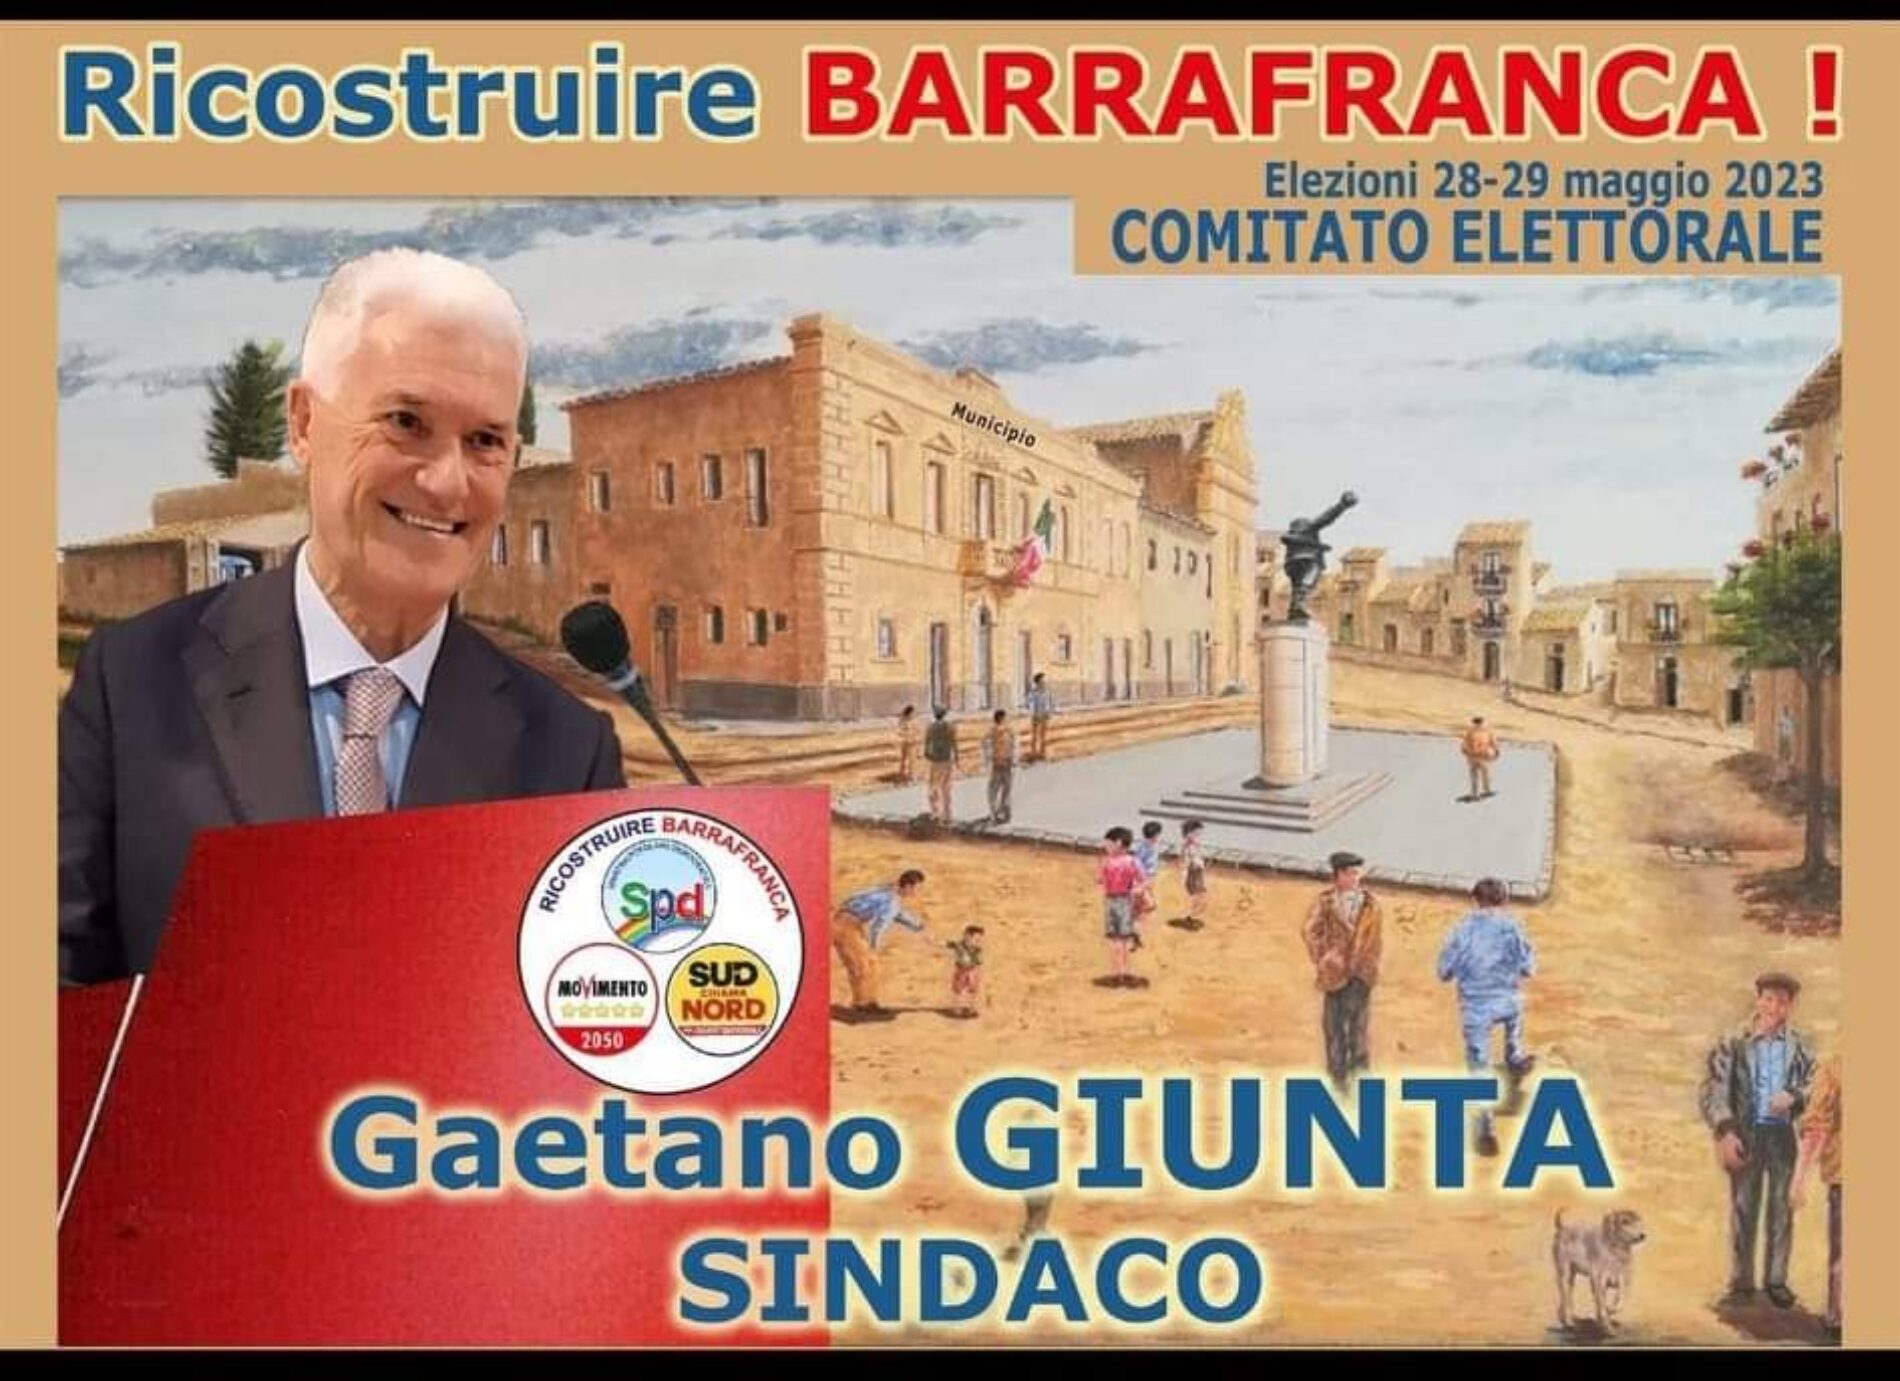 BARRAFRANCA. Elezioni Amministrative 28-29 Maggio 2023. Gaetano Giunta candidato a sindaco di Barrafranca.